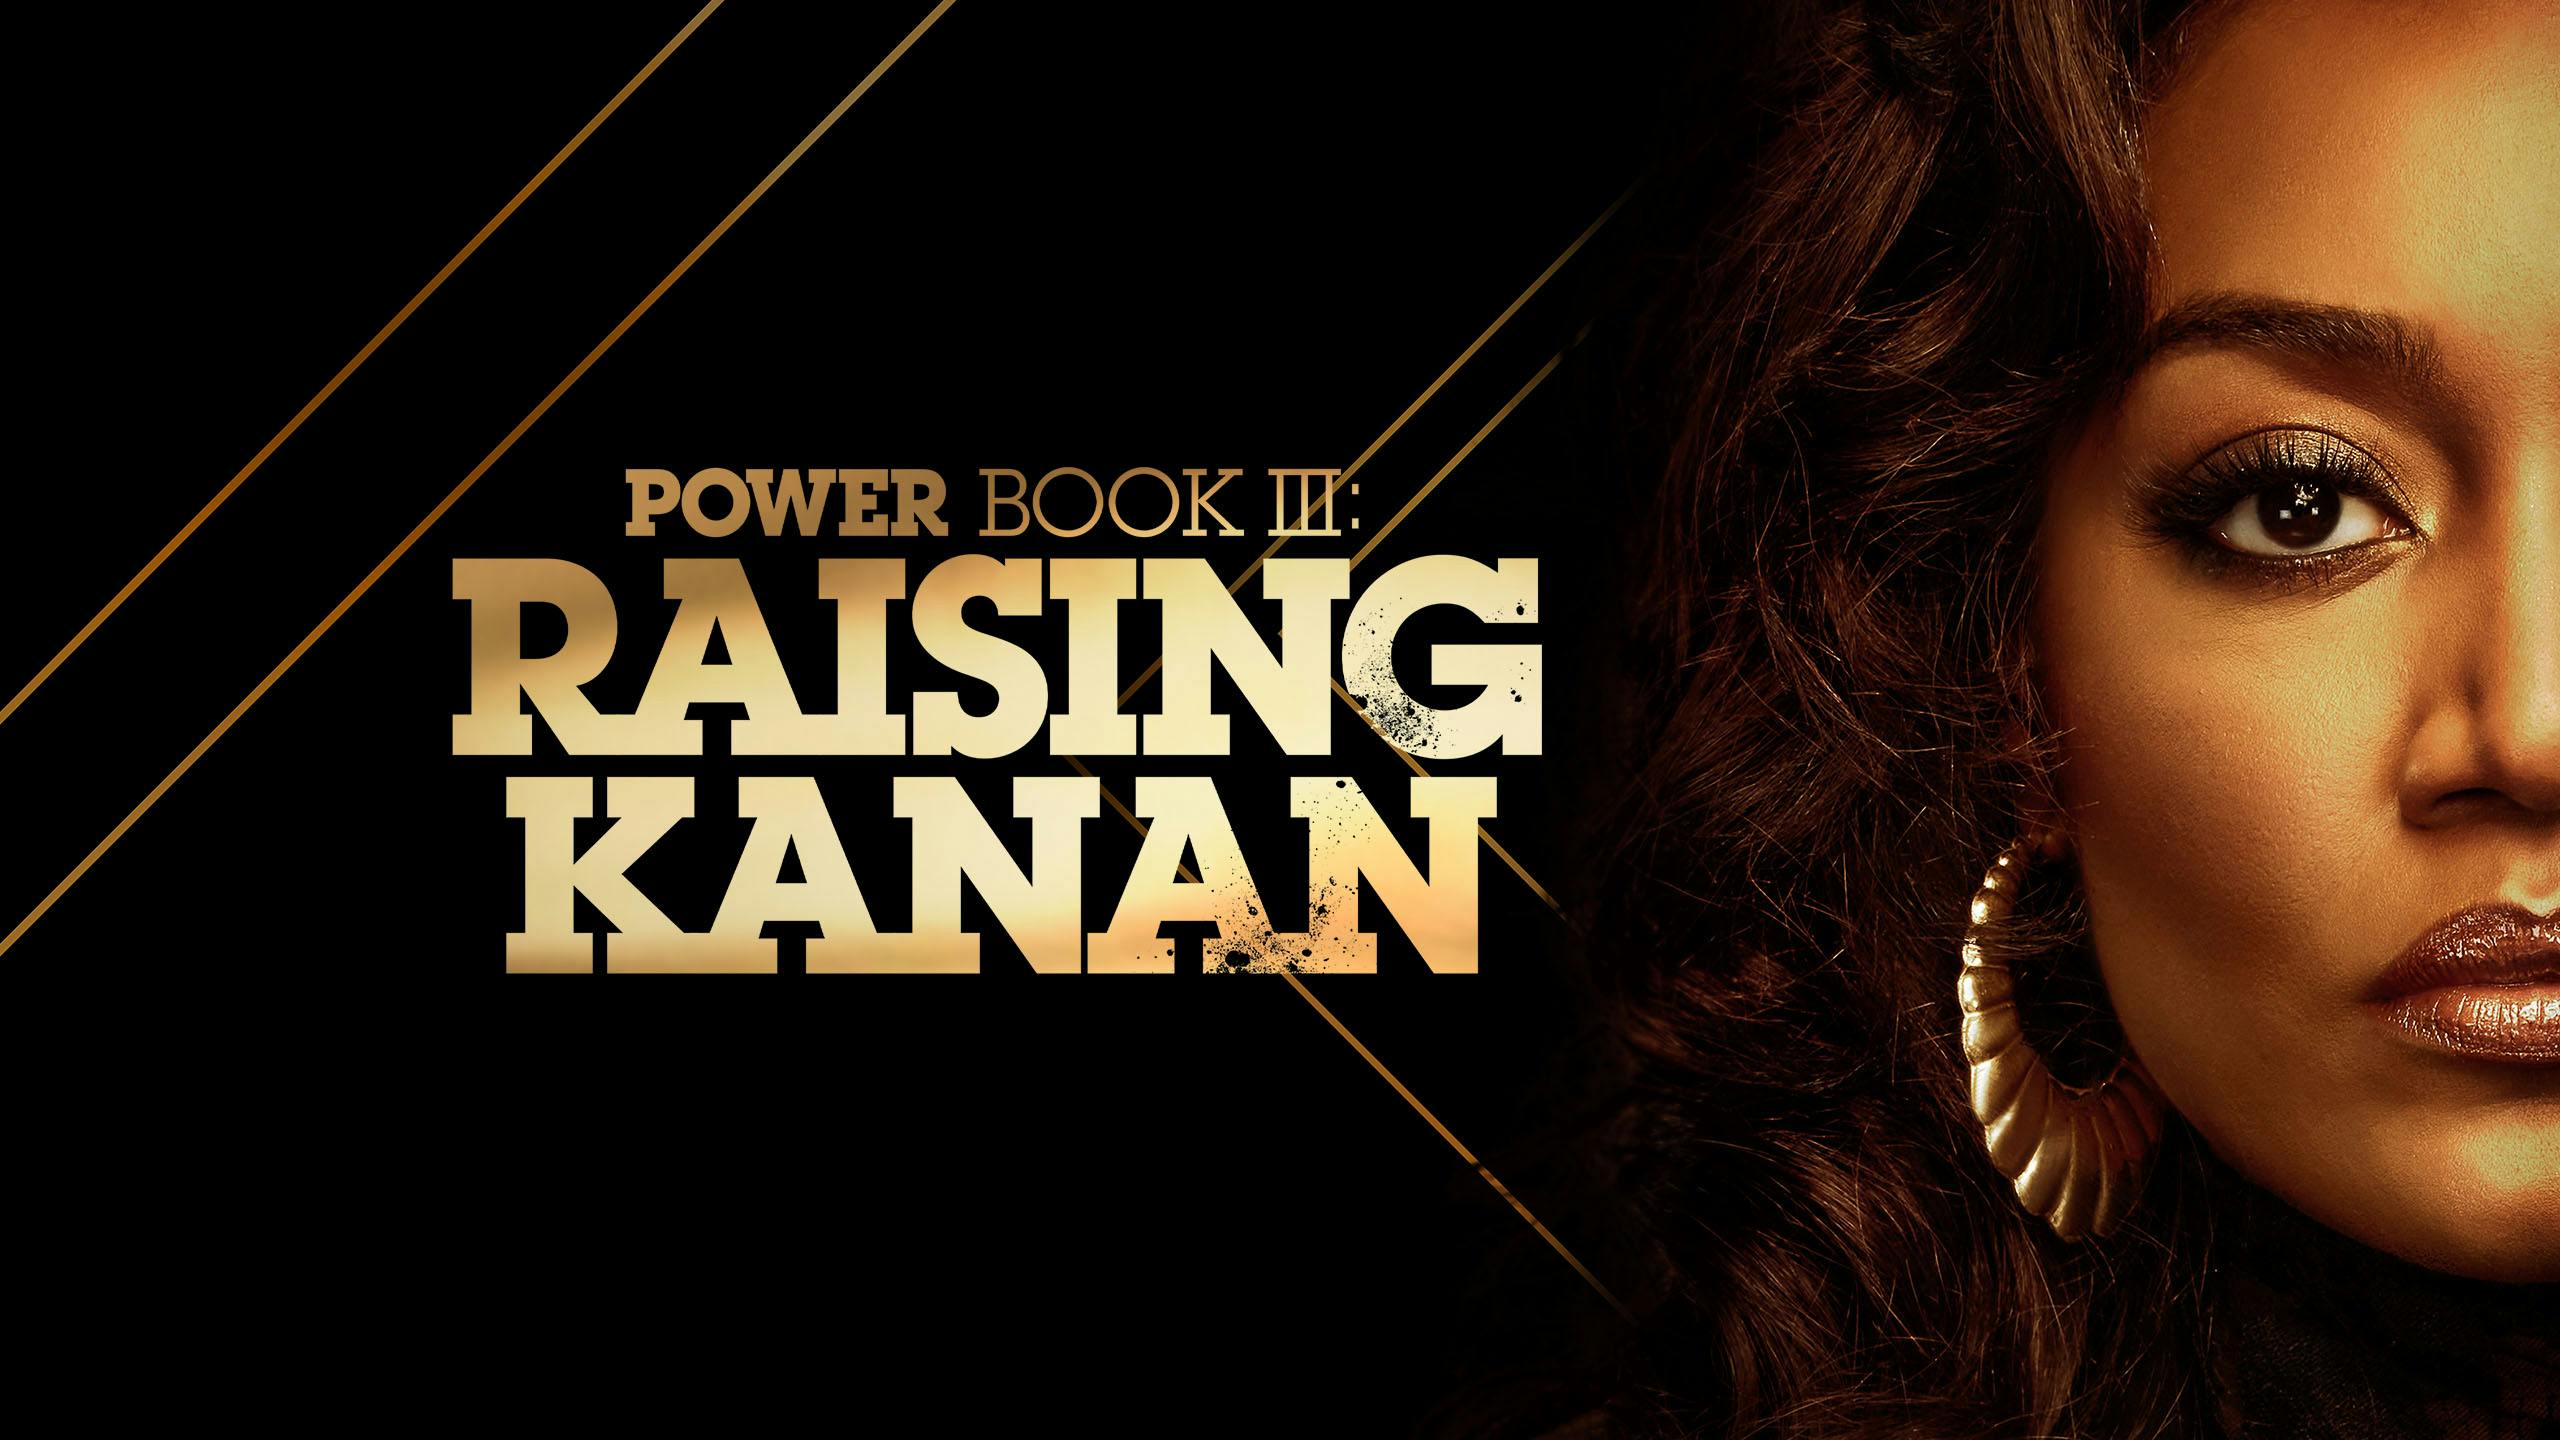 دانلود زیرنویس سریال Power Book III: Raising Kanan 2021 - بلو سابتايتل